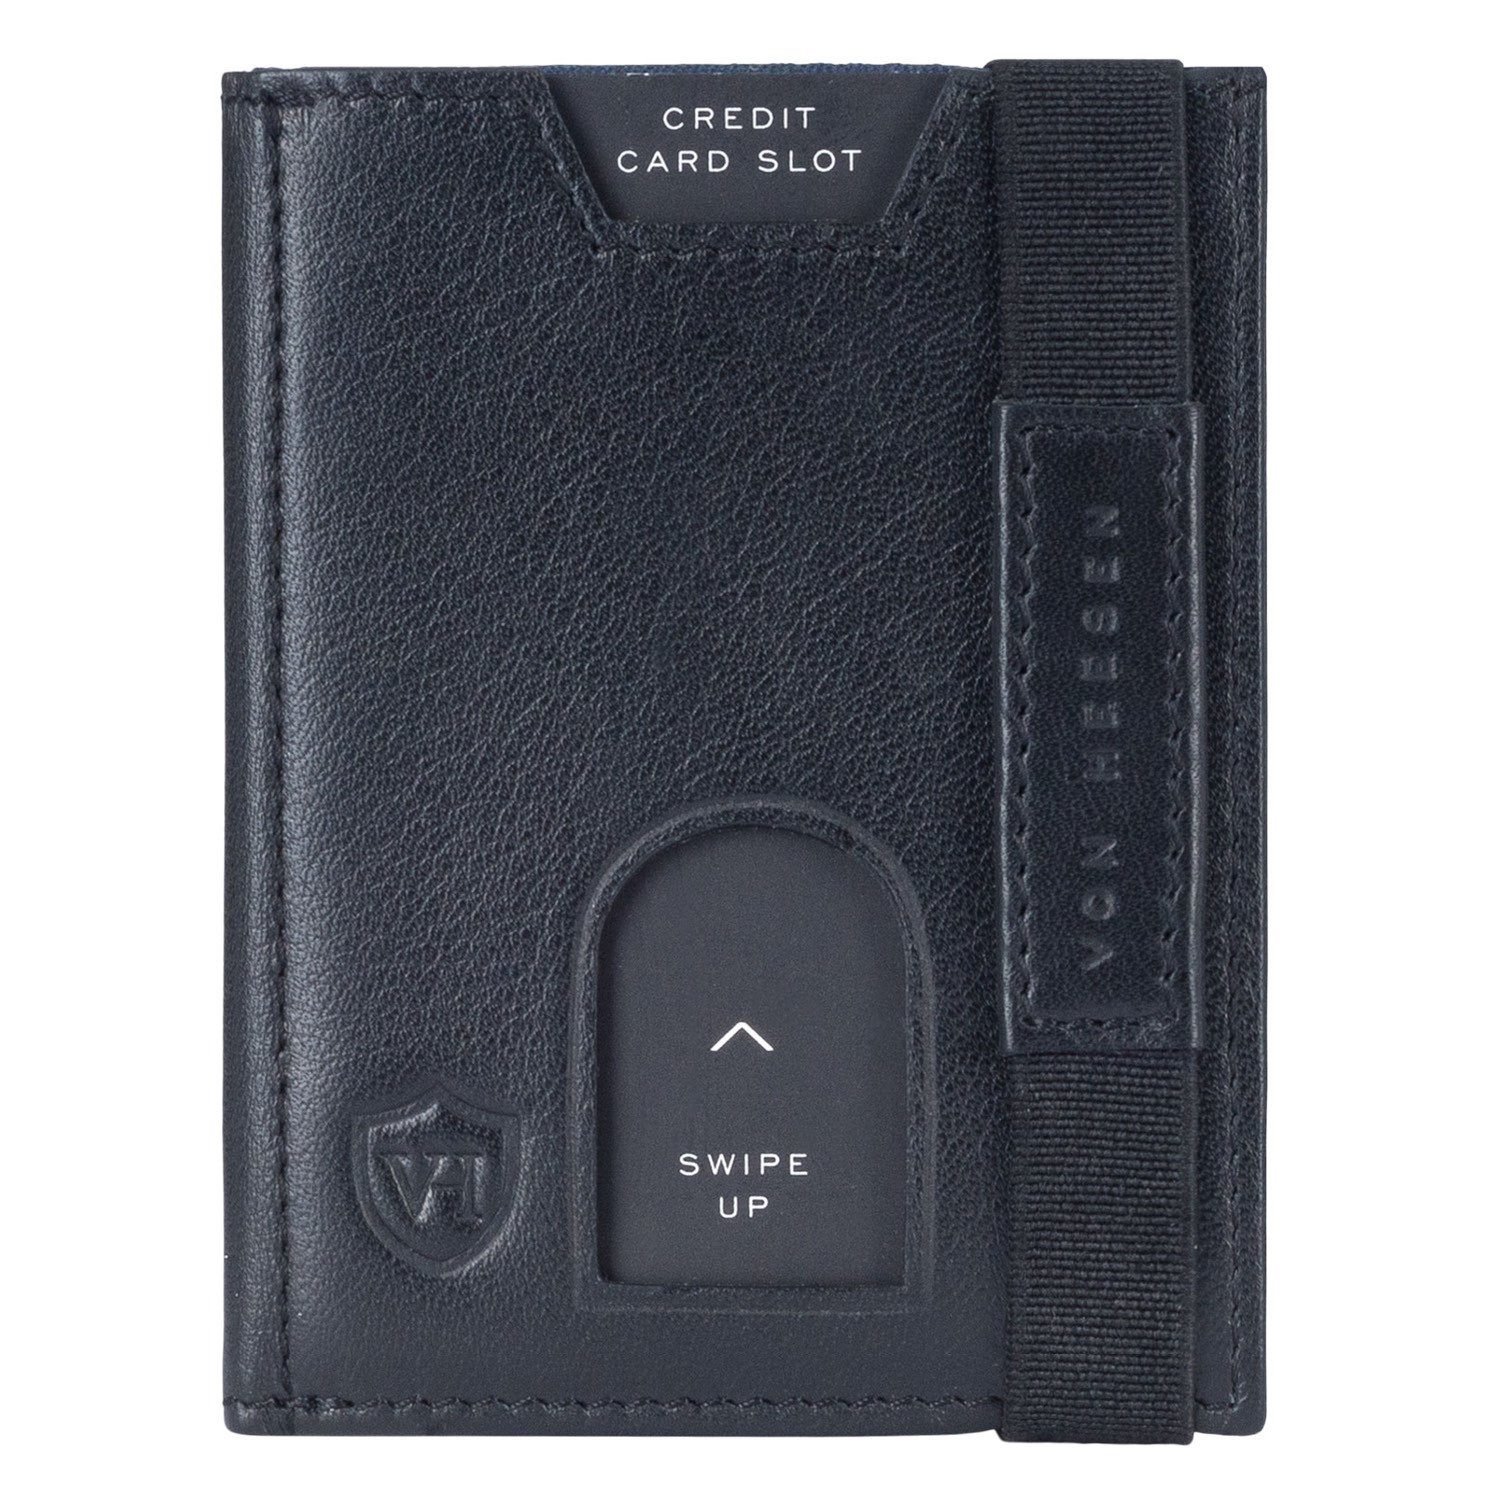 VON HEESEN Geldbörse Whizz & Wallet mit Portemonnaie RFID-Schutz Kartenfächer Geschenkbox Leder & Wallet inkl. (braun) Schwarz Slim 5 Geldbeutel XL-Münzfach